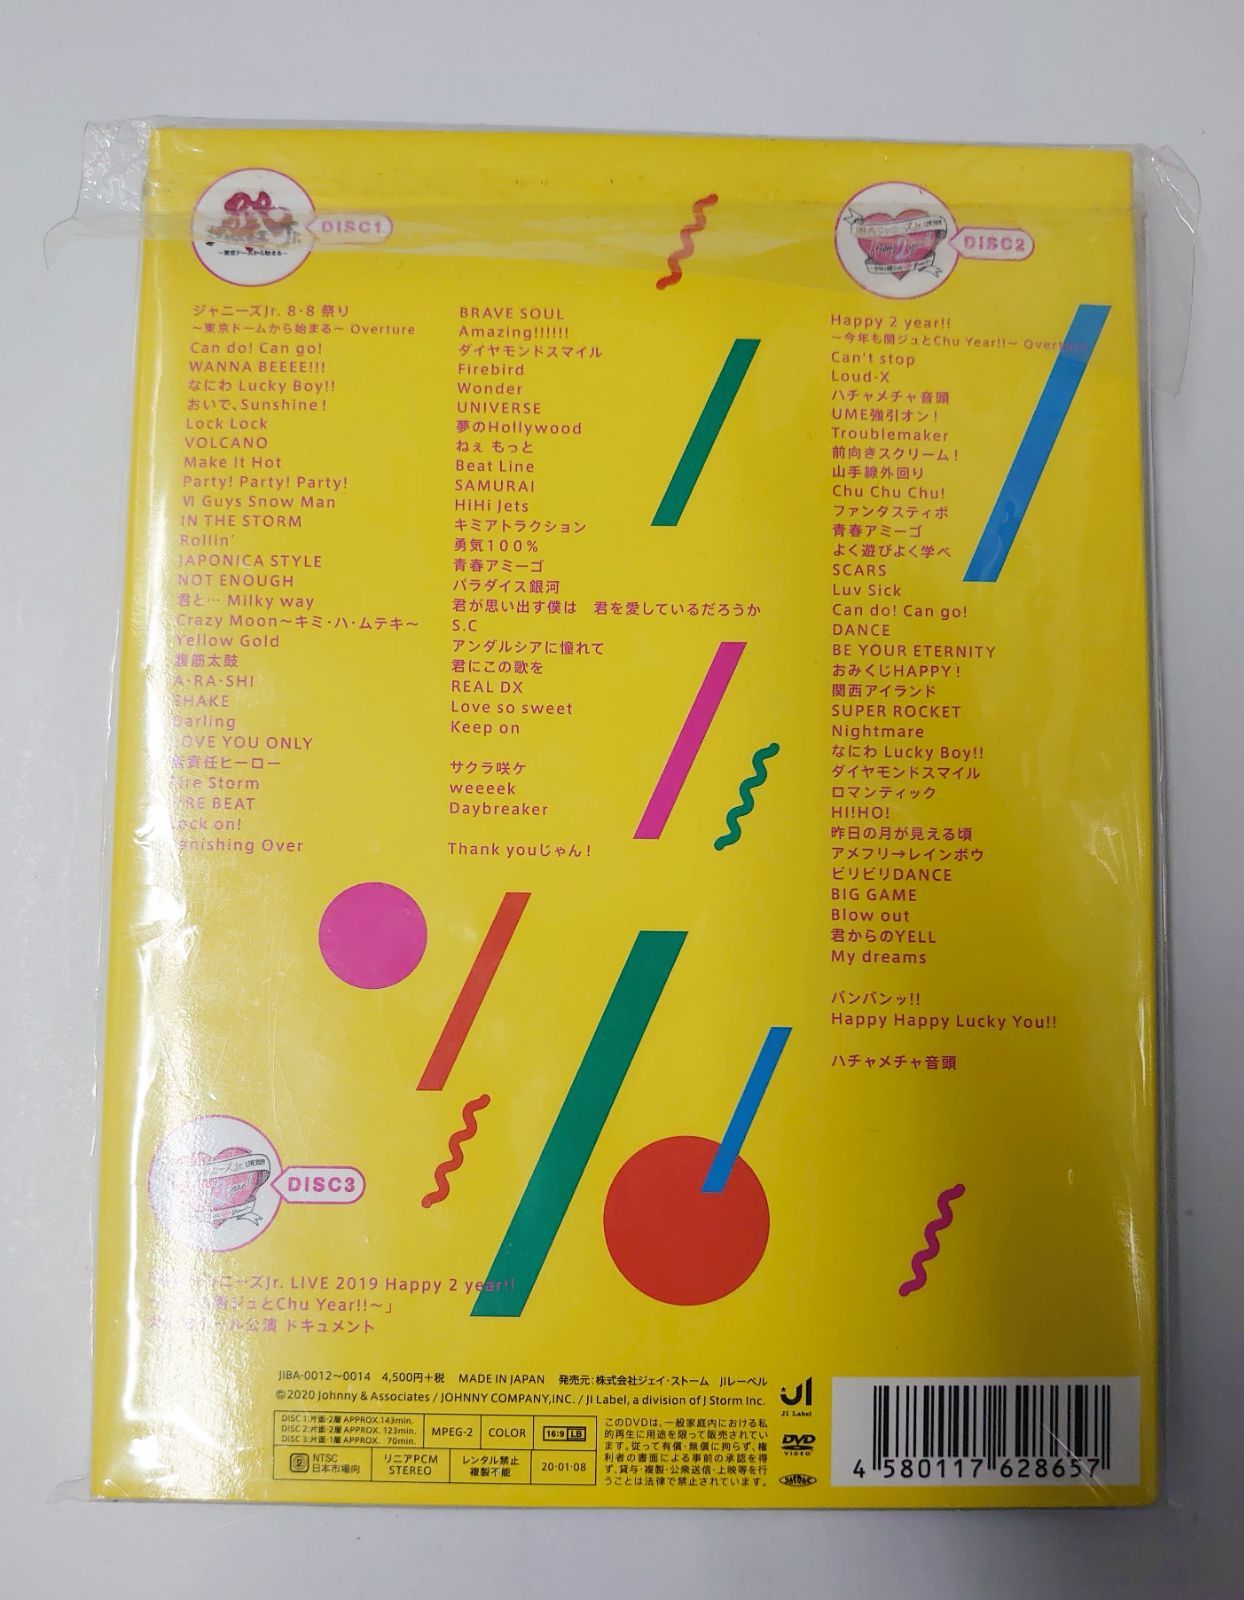 素顔4 関西ジャニーズJr.盤 DVD 3枚組 ポストカード付き - メルカリ